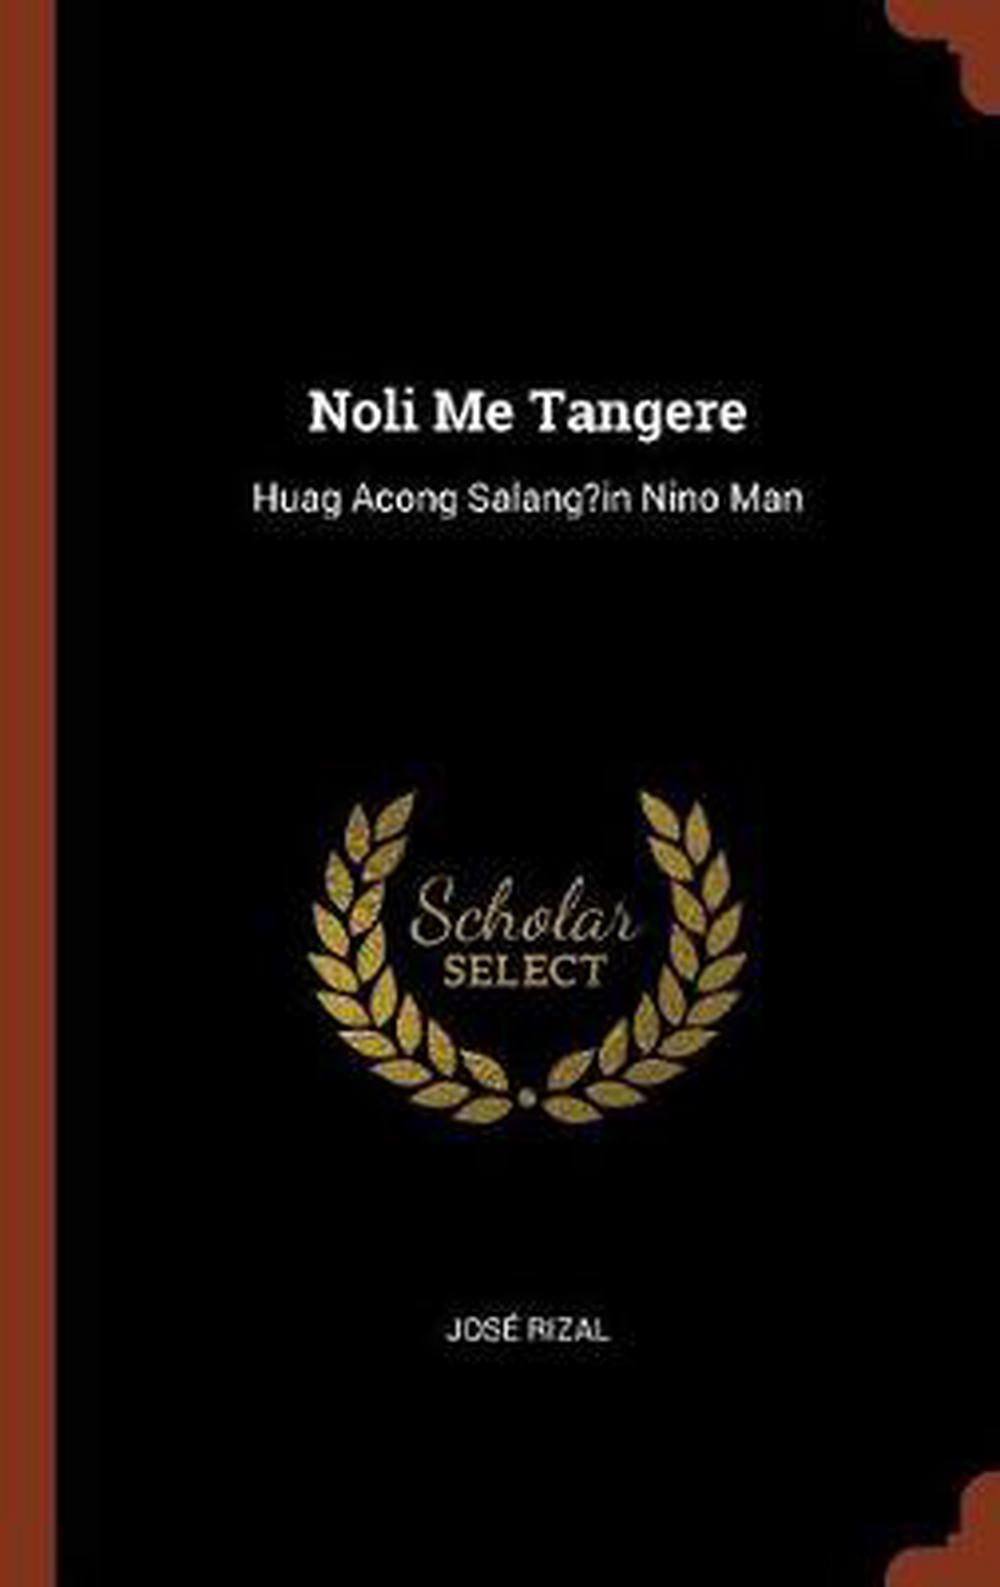 Jose Rizal Quotes Tagalog Noli Me Tangere - Conten Den 4